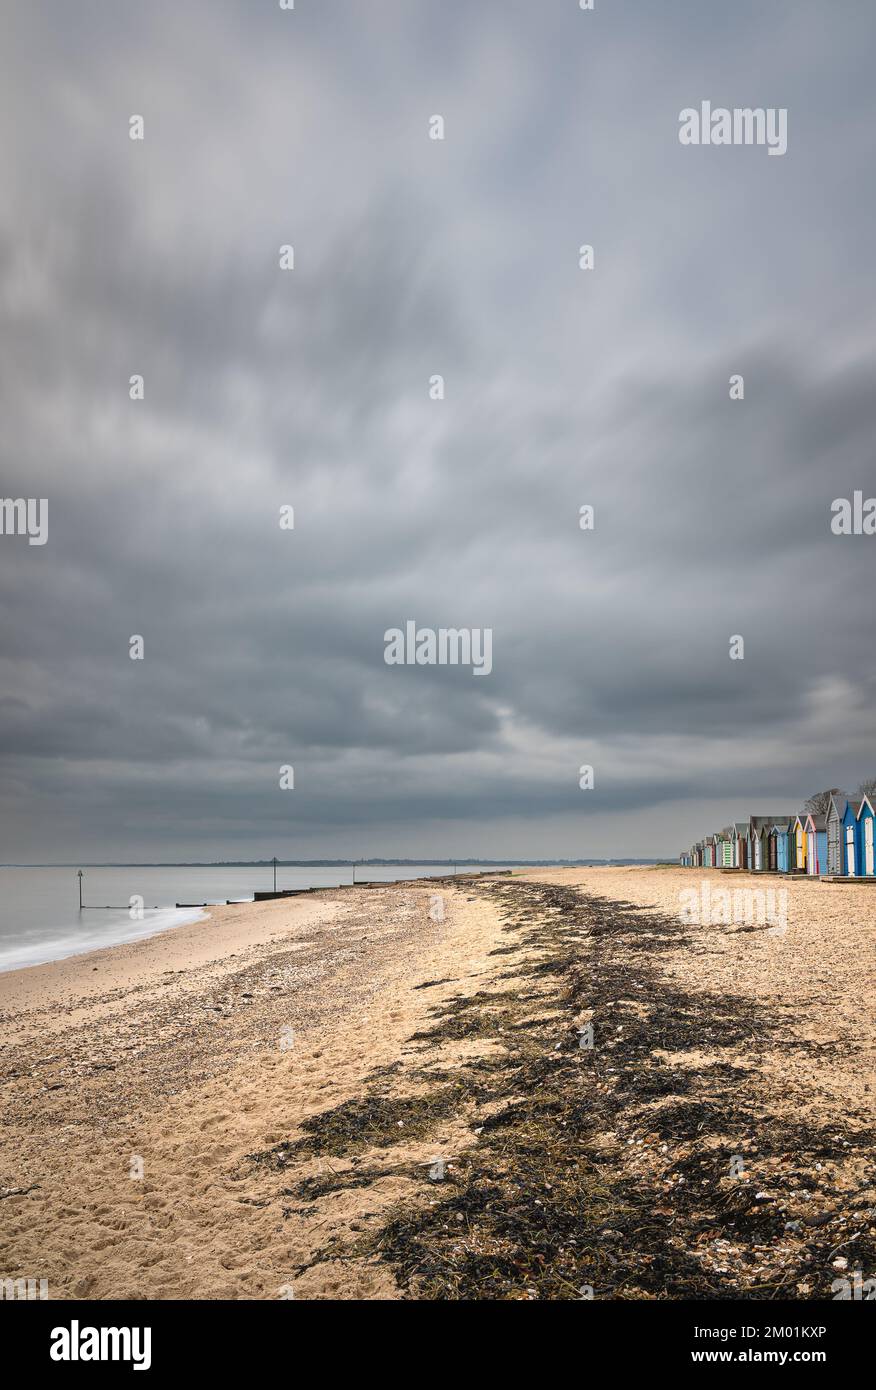 Strandhütten auf Mersea Island in Essex. Moody, bewölkter Himmel und Langzeitaufnahme. Stockfoto